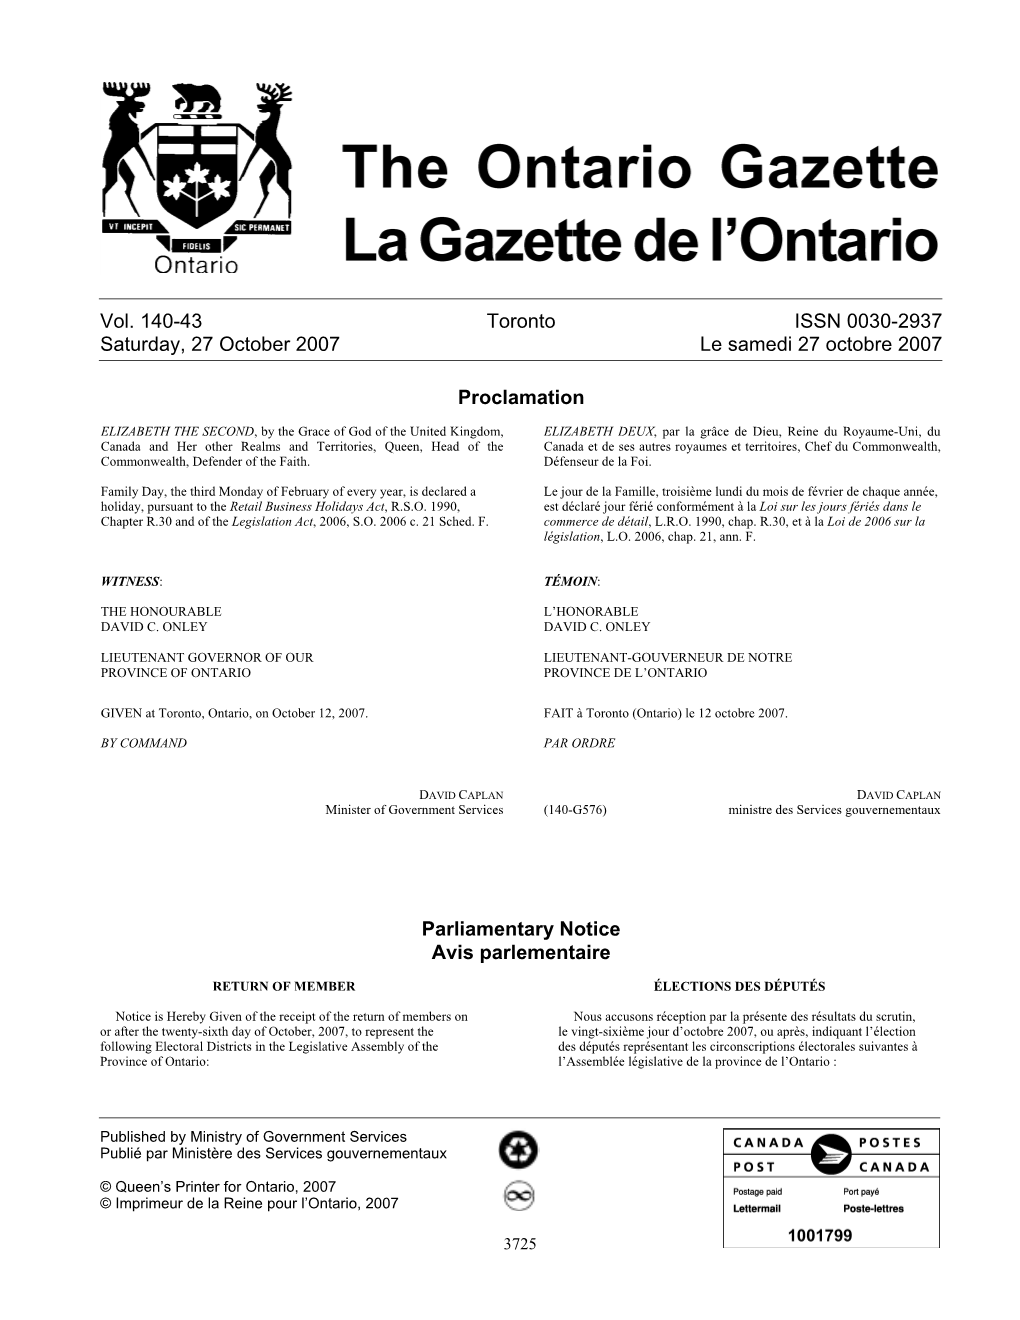 Ontario Gazette Volume 140 Issue 43, La Gazette De L'ontario Volume 140